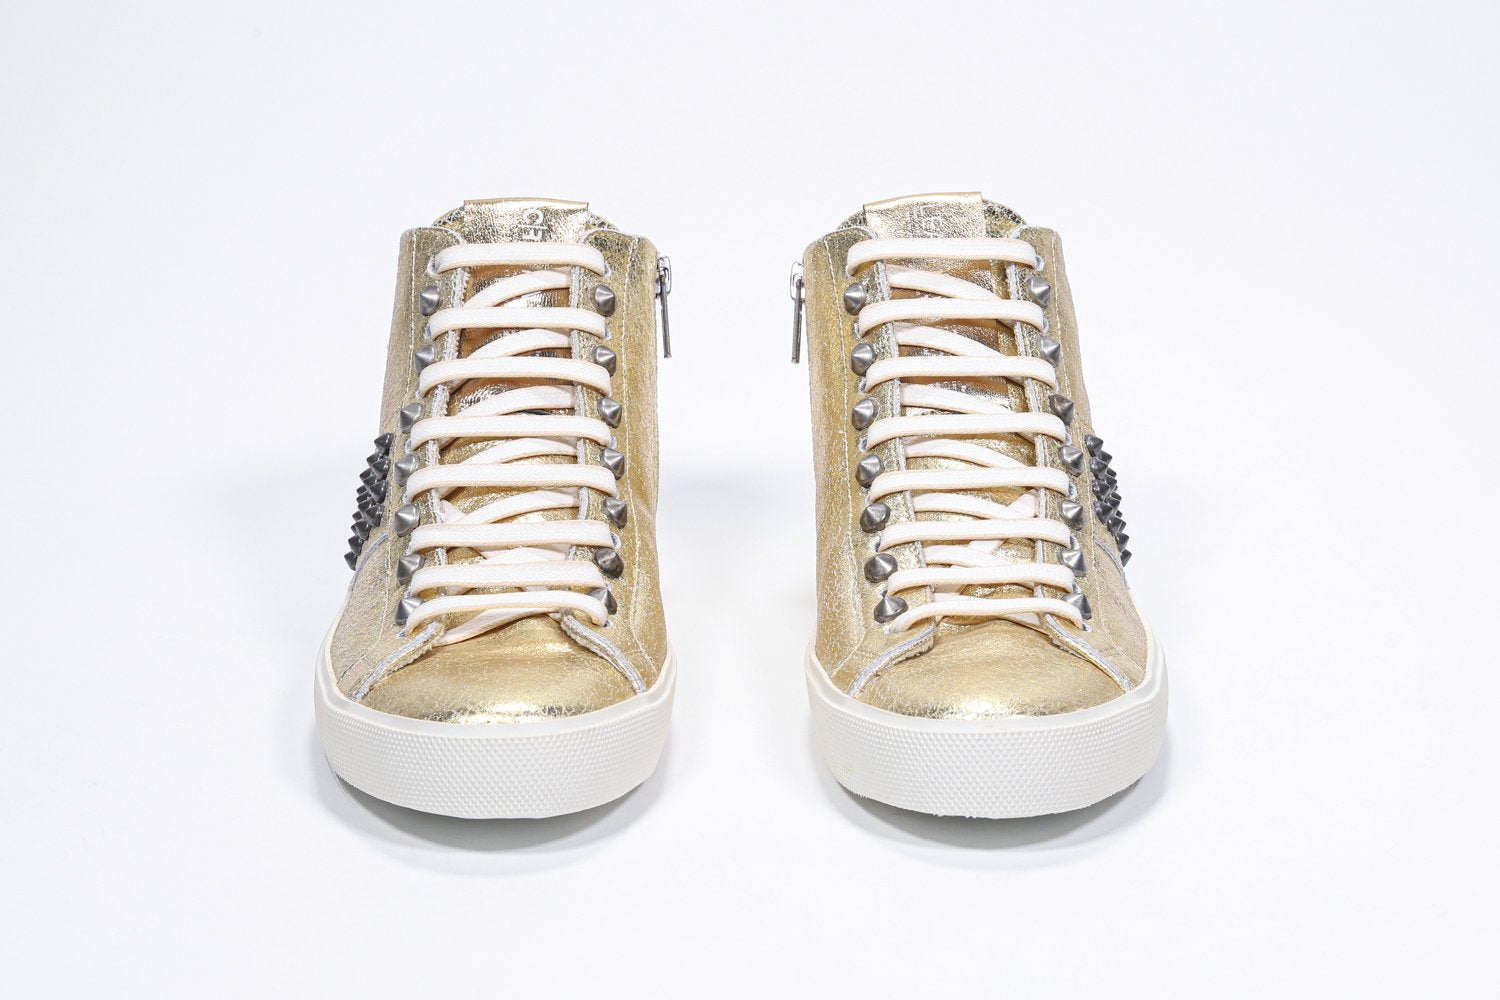 Vue de face de la chaussure intermédiaire en or métallisé sneaker. Tige en cuir avec clous, fermeture éclair intérieure et semelle en caoutchouc vintage.